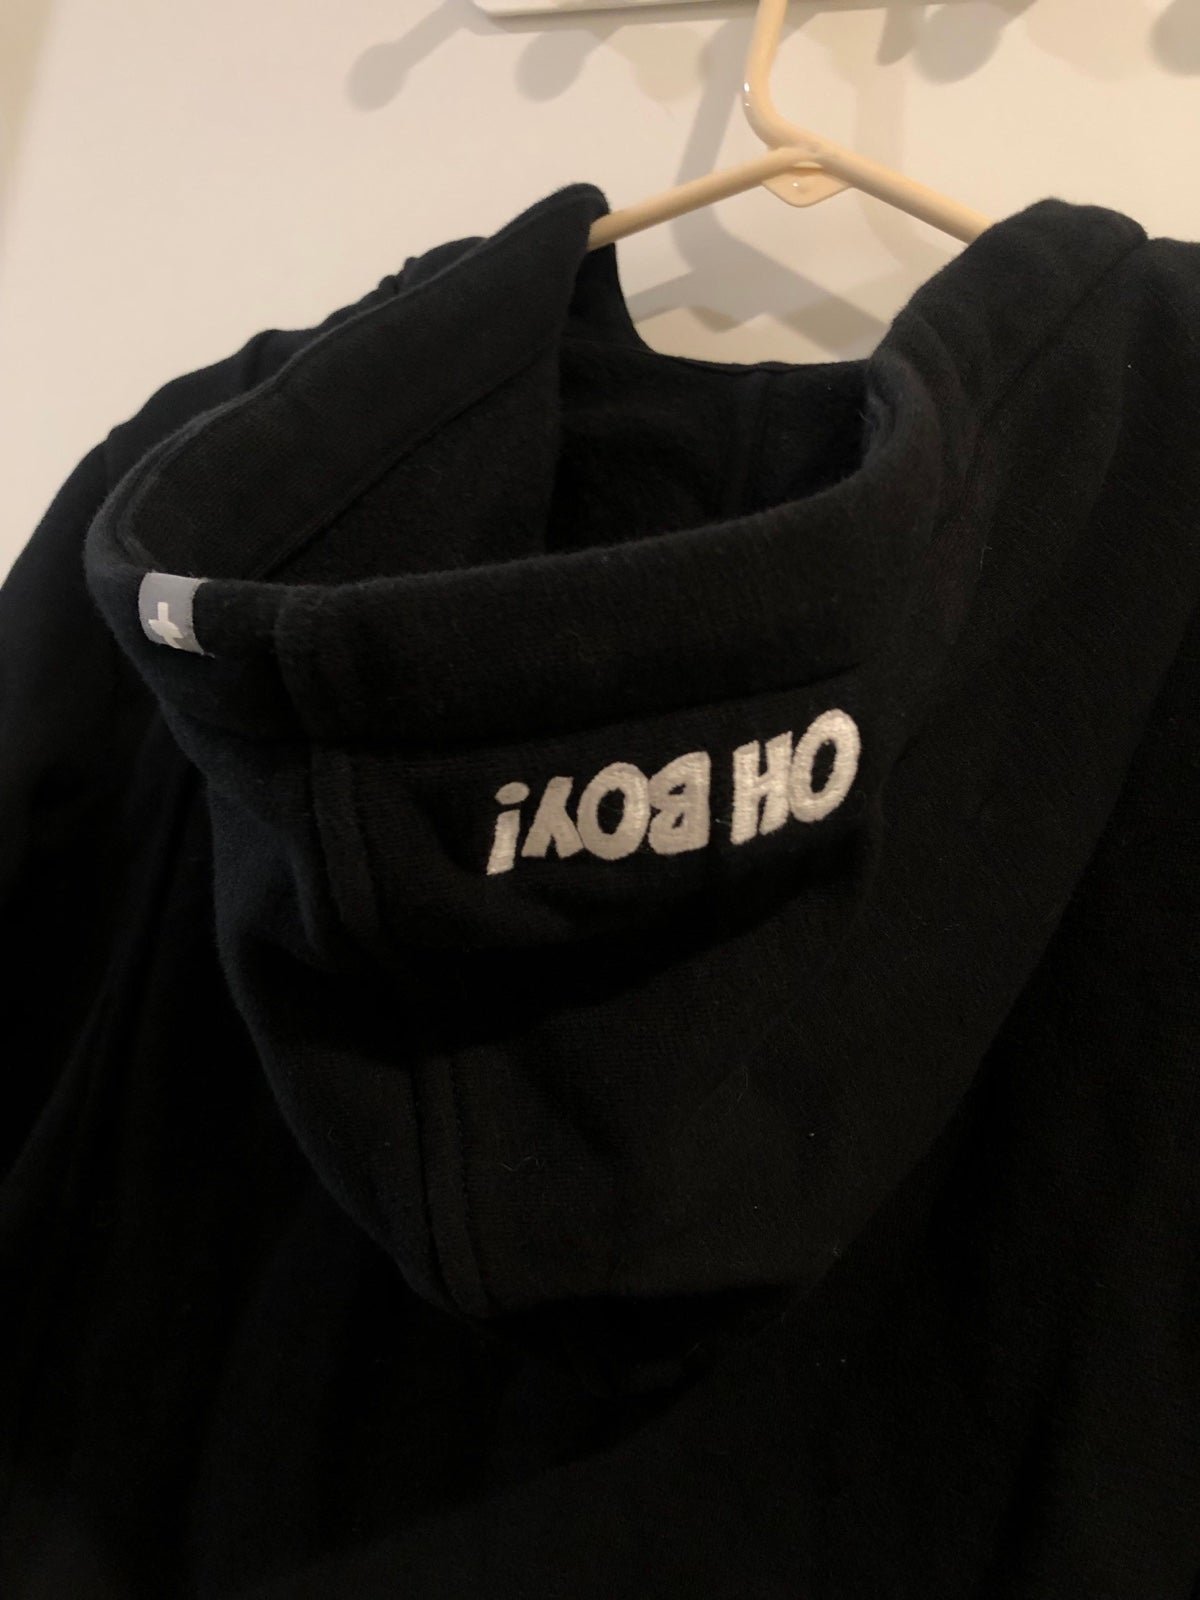 Comfortable Figs X Disney Fleece Full Zip Hoodie Sweater Women’s Size Medium IFbO13RGd Store Online